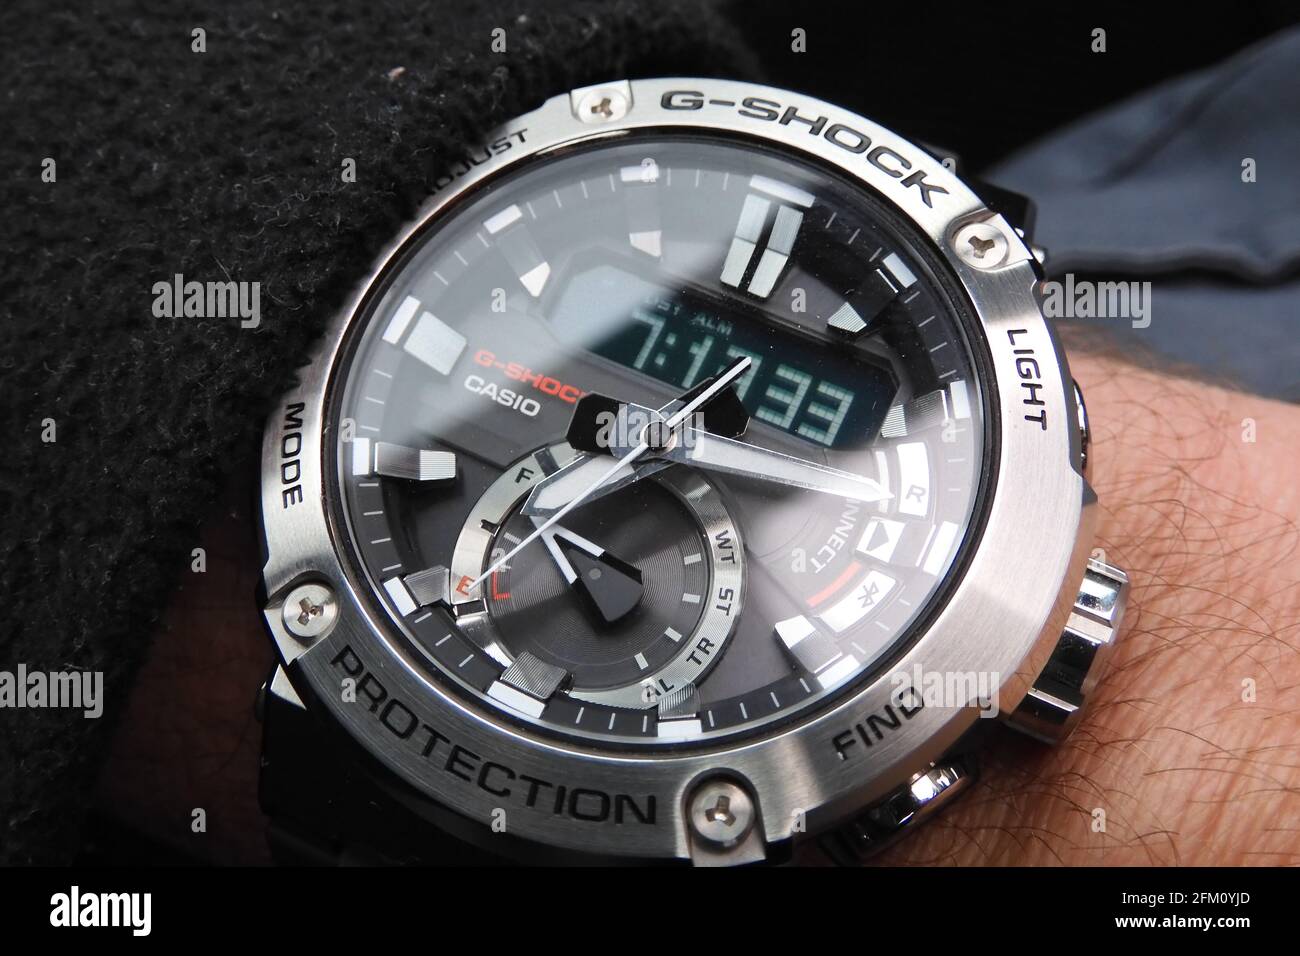 Cronografo digitale analogico Casio GST-B200 orologio da polso Bluetooth  con nucleo in carbonio con un